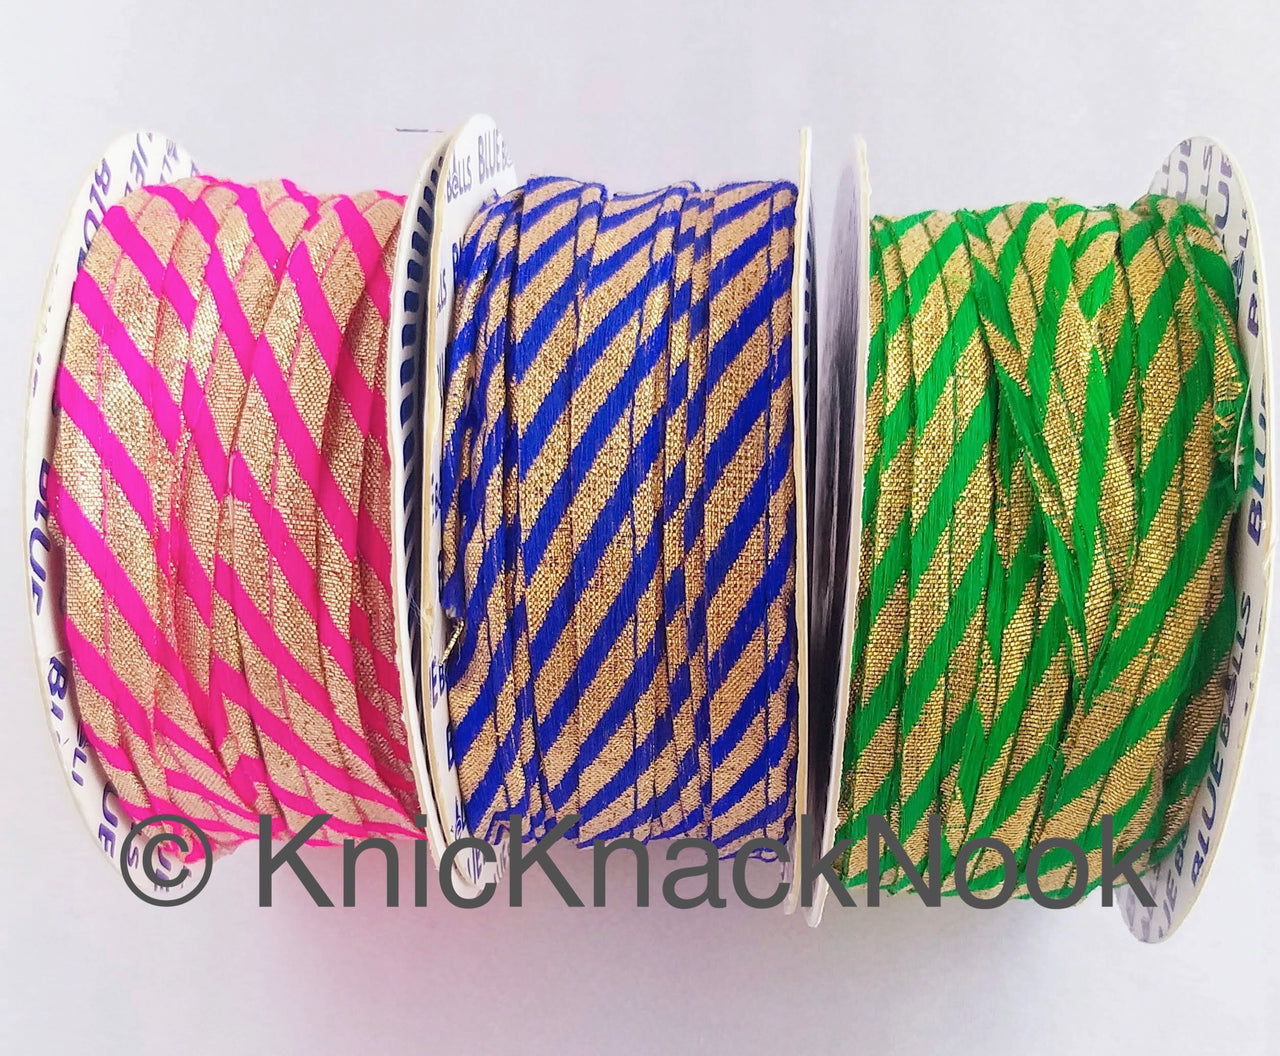 Gold Fabric Cord Trim With Blue / Fuchsia Pink / Green Thread Embroidery, Stripes Pattern, Lehariya, One Yard Lace Trim 10mm WideTrim